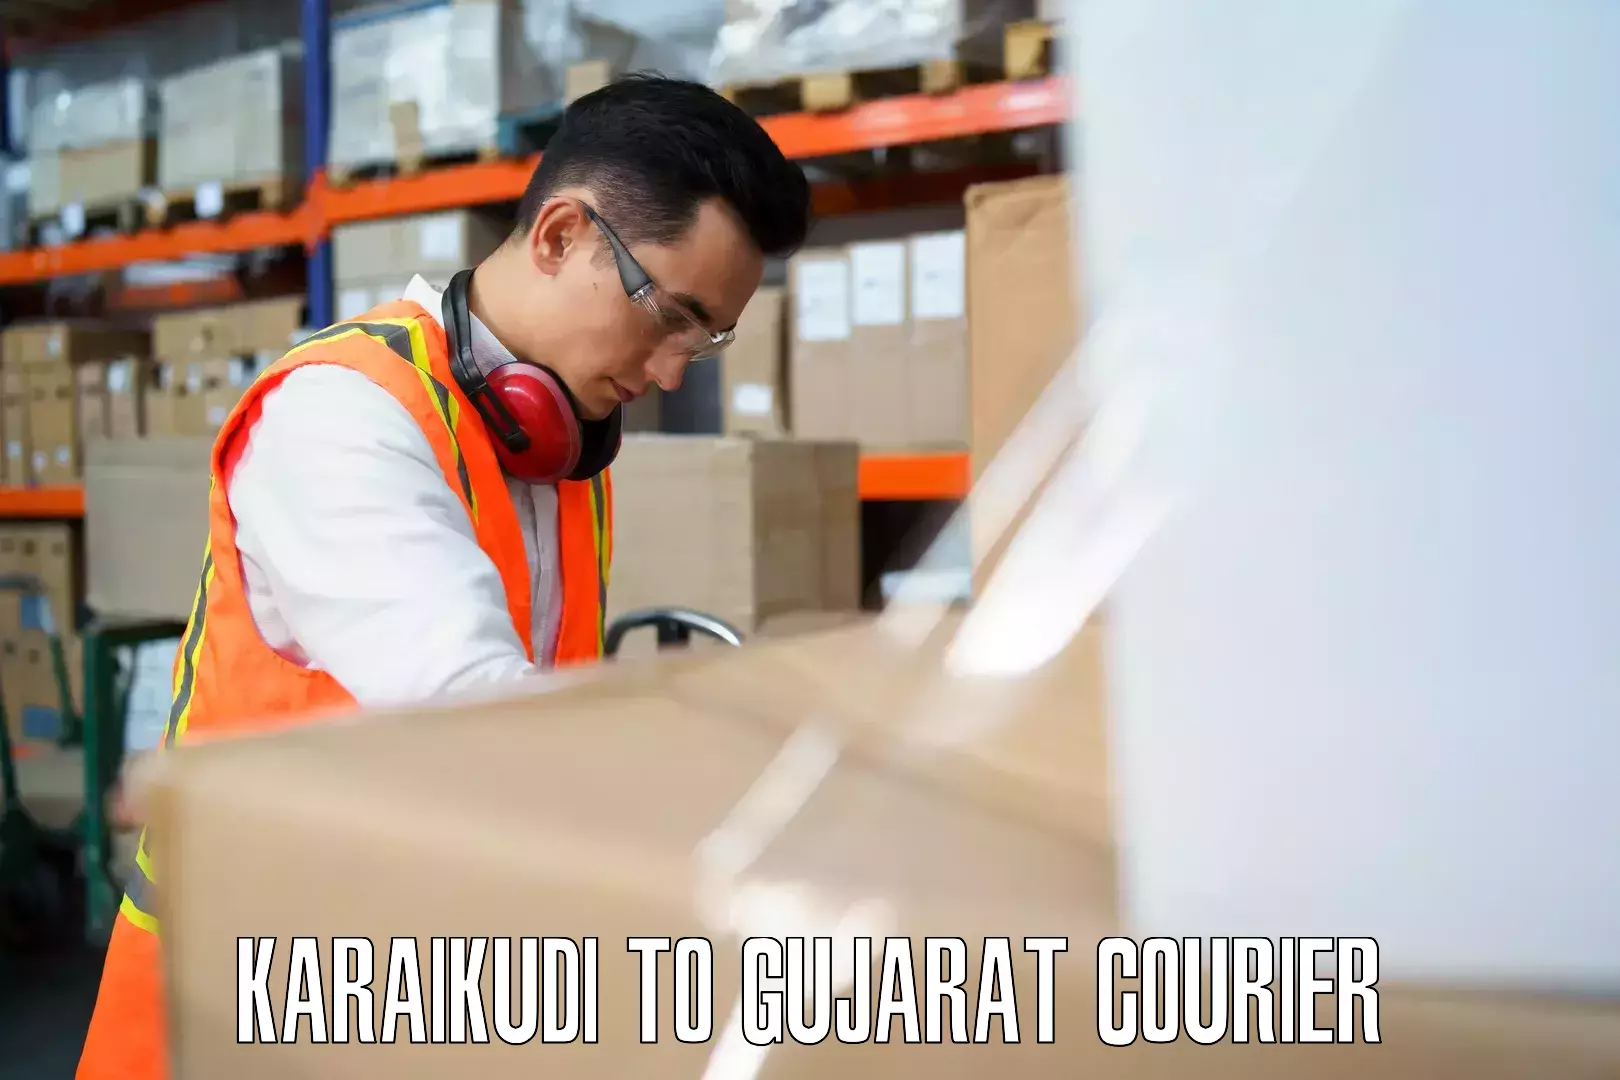 Baggage courier guide Karaikudi to Dholka